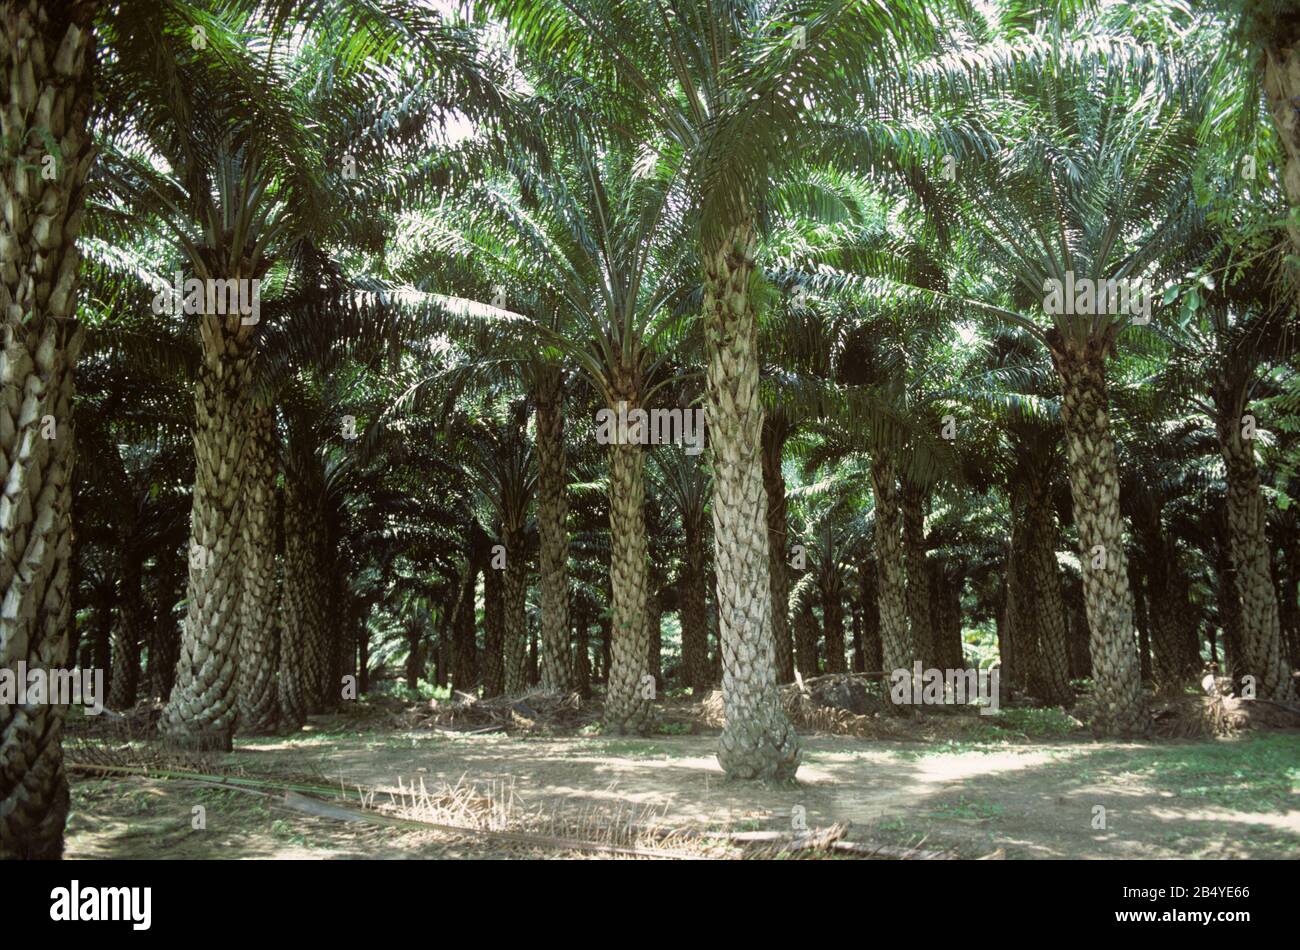 Quindici anni di palma da olio (Elaeis guineensis) piantagione con grandi palme stabilite, Malesia, febbraio Foto Stock